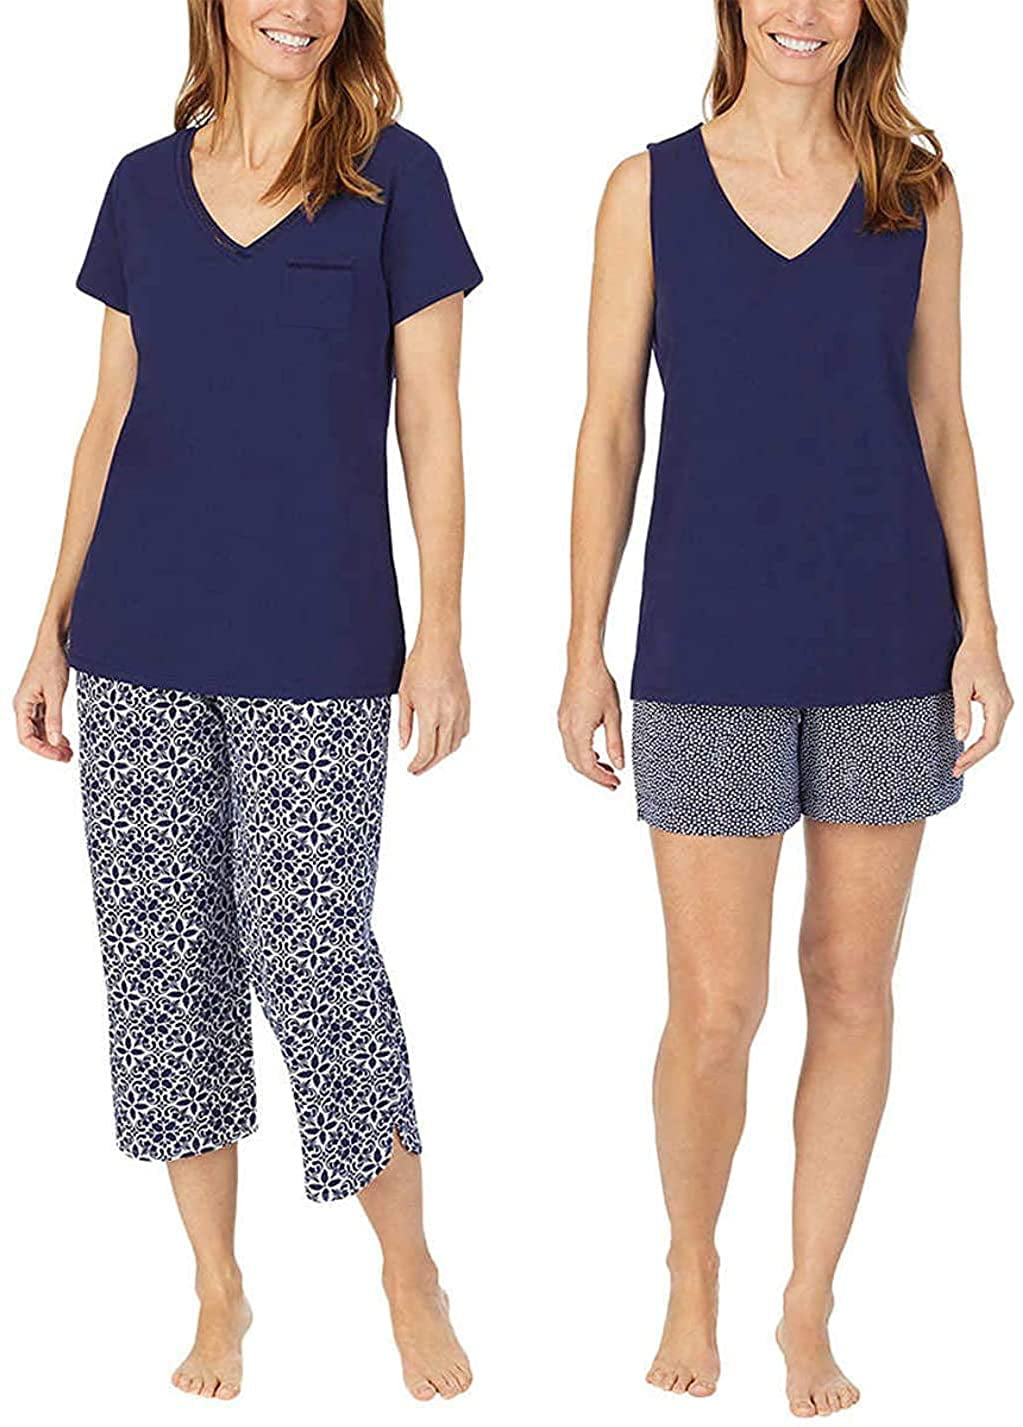 Carole Hochman Women's 4 Piece Capri Cotton Pajama Set Grey XL New 